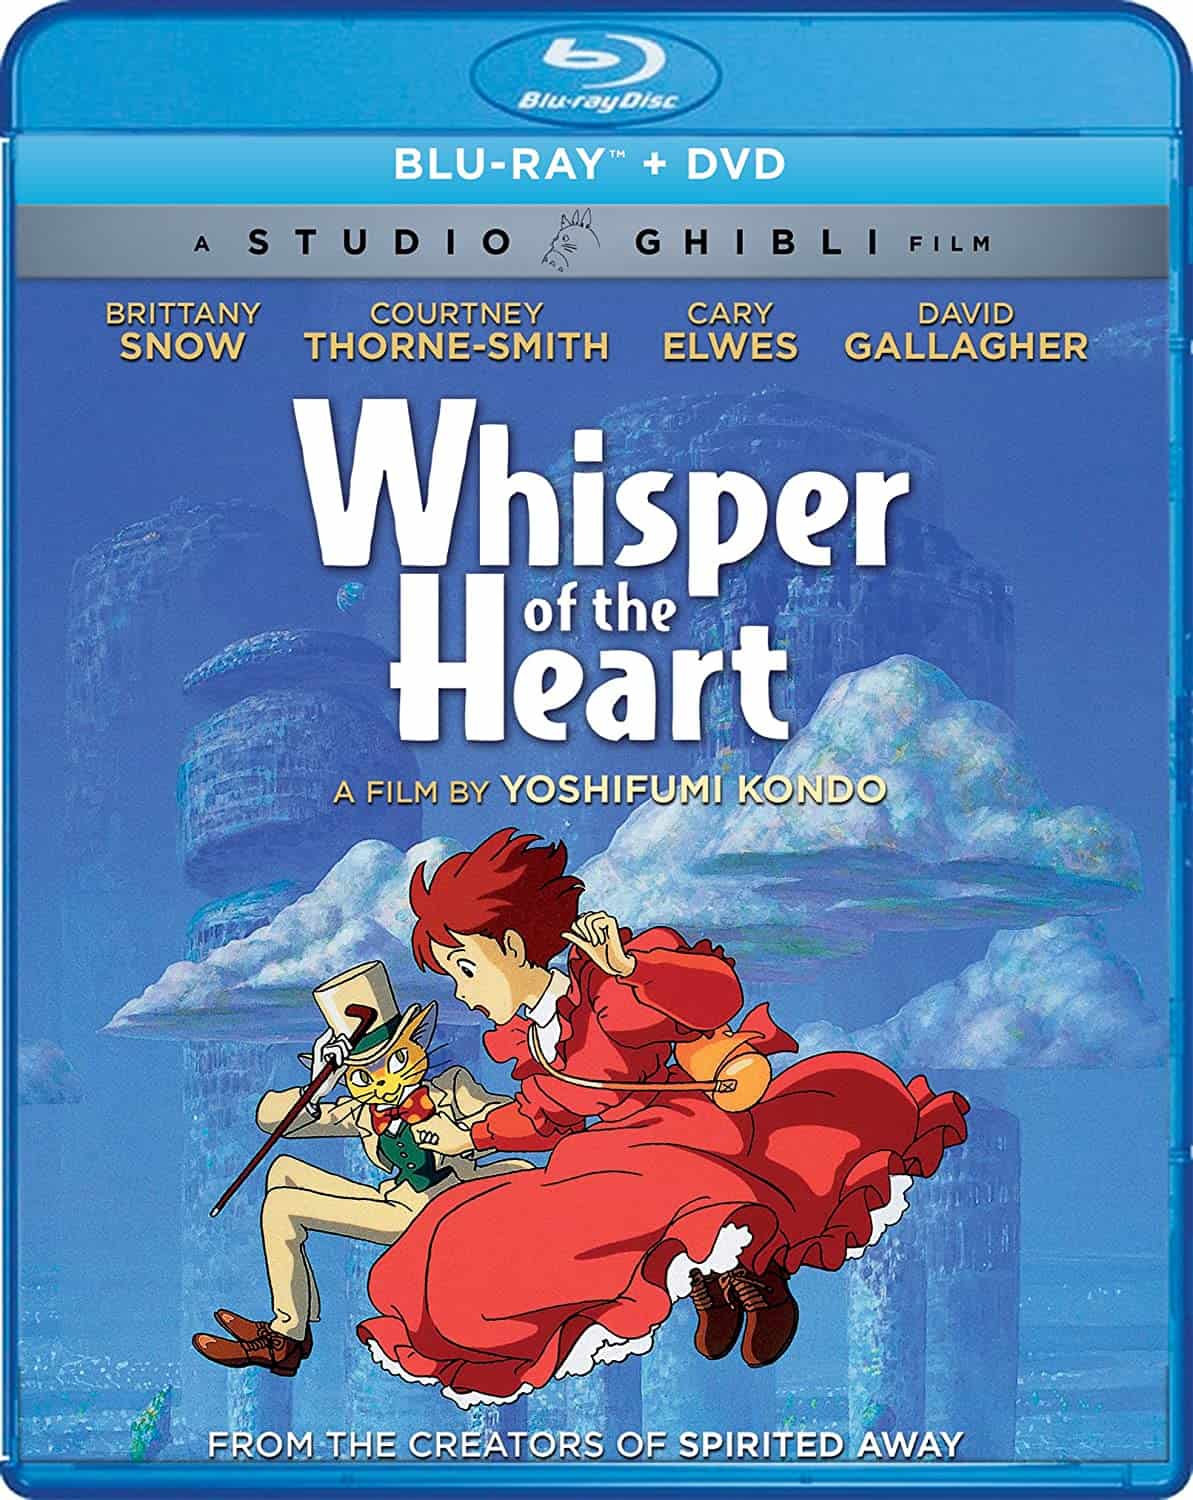 Ghibli Store Releases Lovely Goods Inspired by Whisper of the Heart -  Crunchyroll News